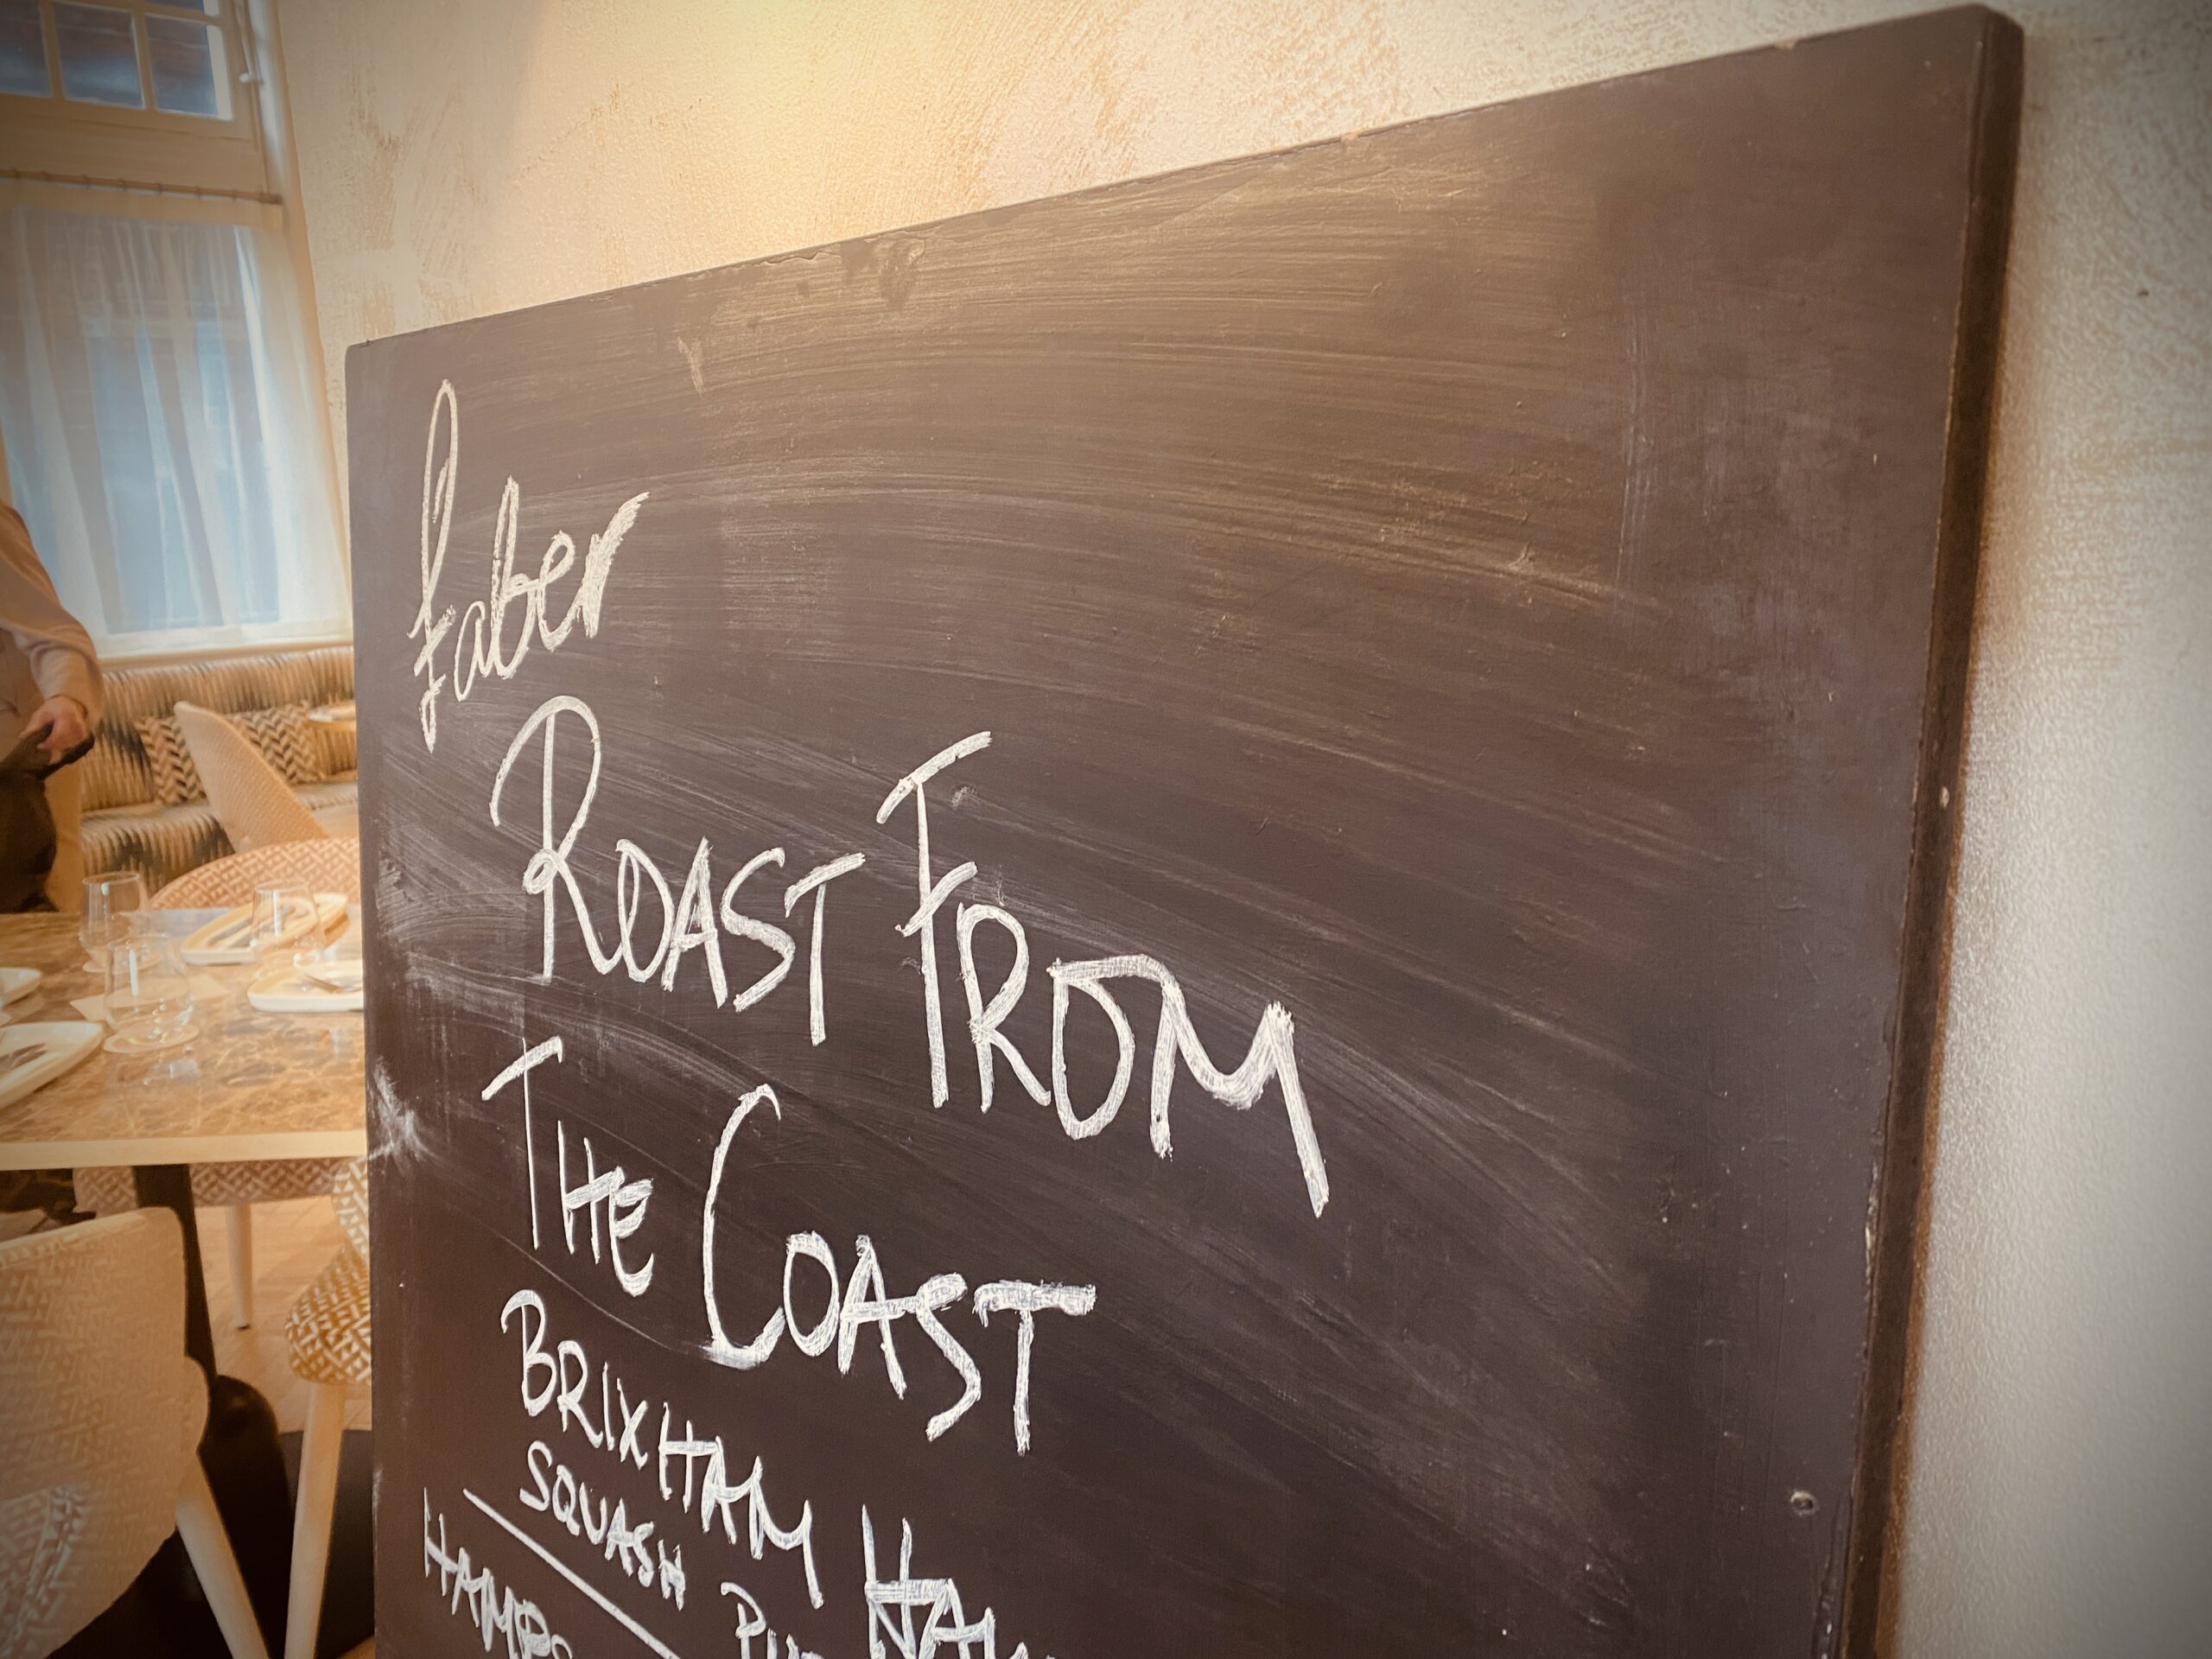 Chalkboard hand written with Roast form the coast written in clear handwriting